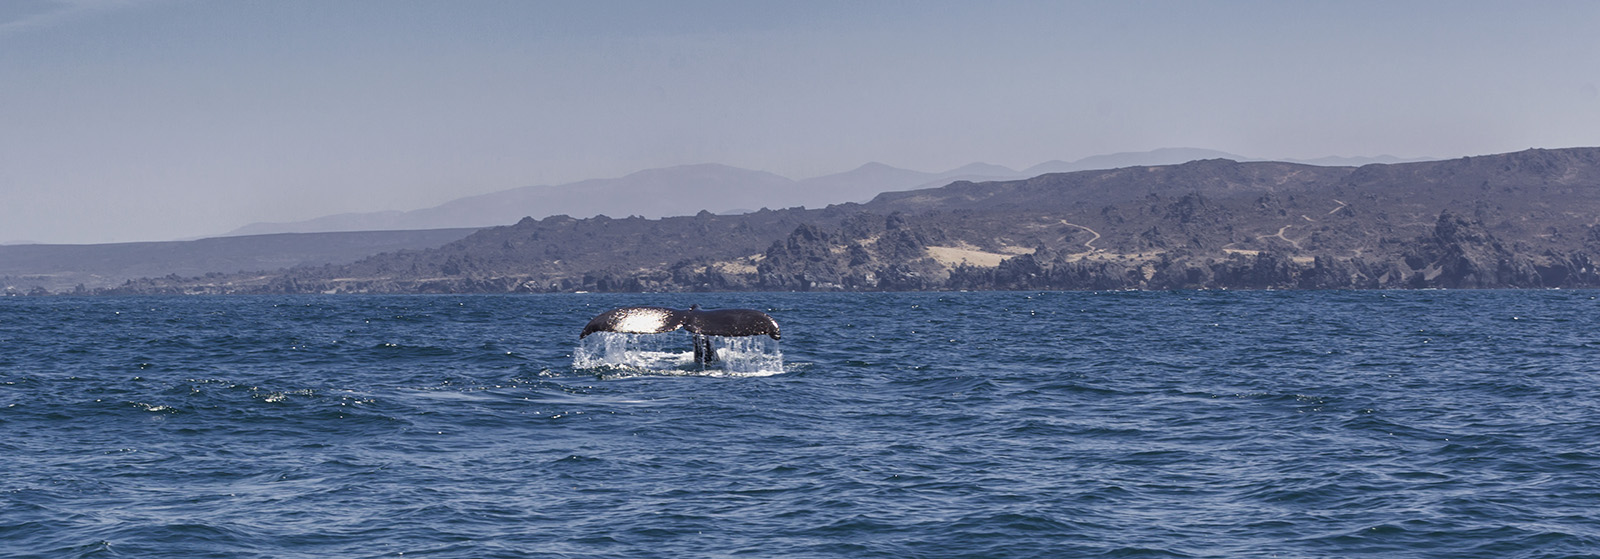 TOUR AVISTAMIENTO DE BALLENAS Whale Watching